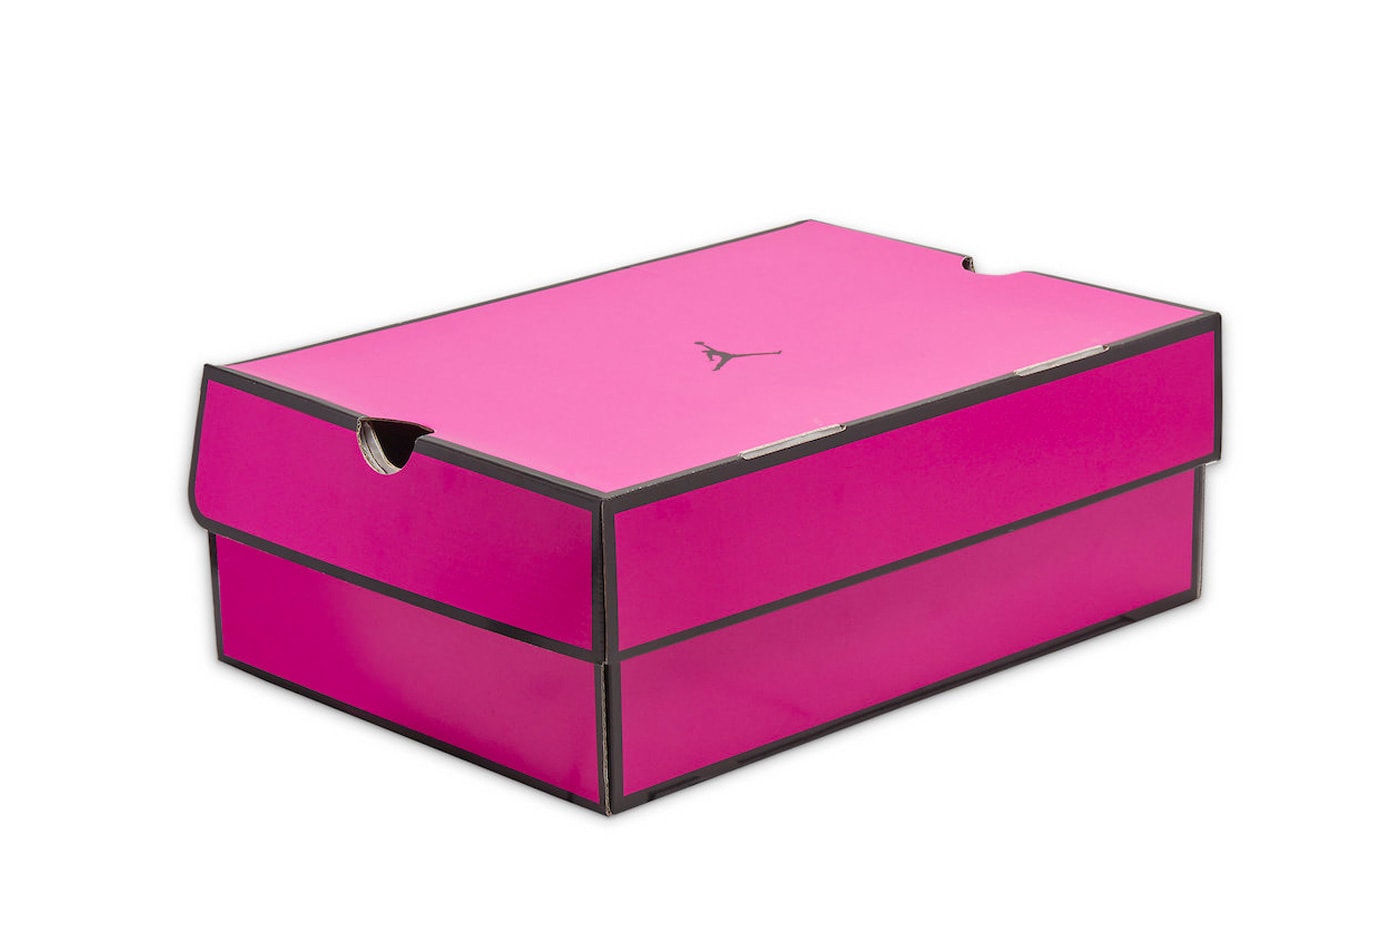 Air Jordan 14 "Shocking Pink" Official Look DH4121-600 Jordan Brand sneaker footwear suede pink black bright crimson